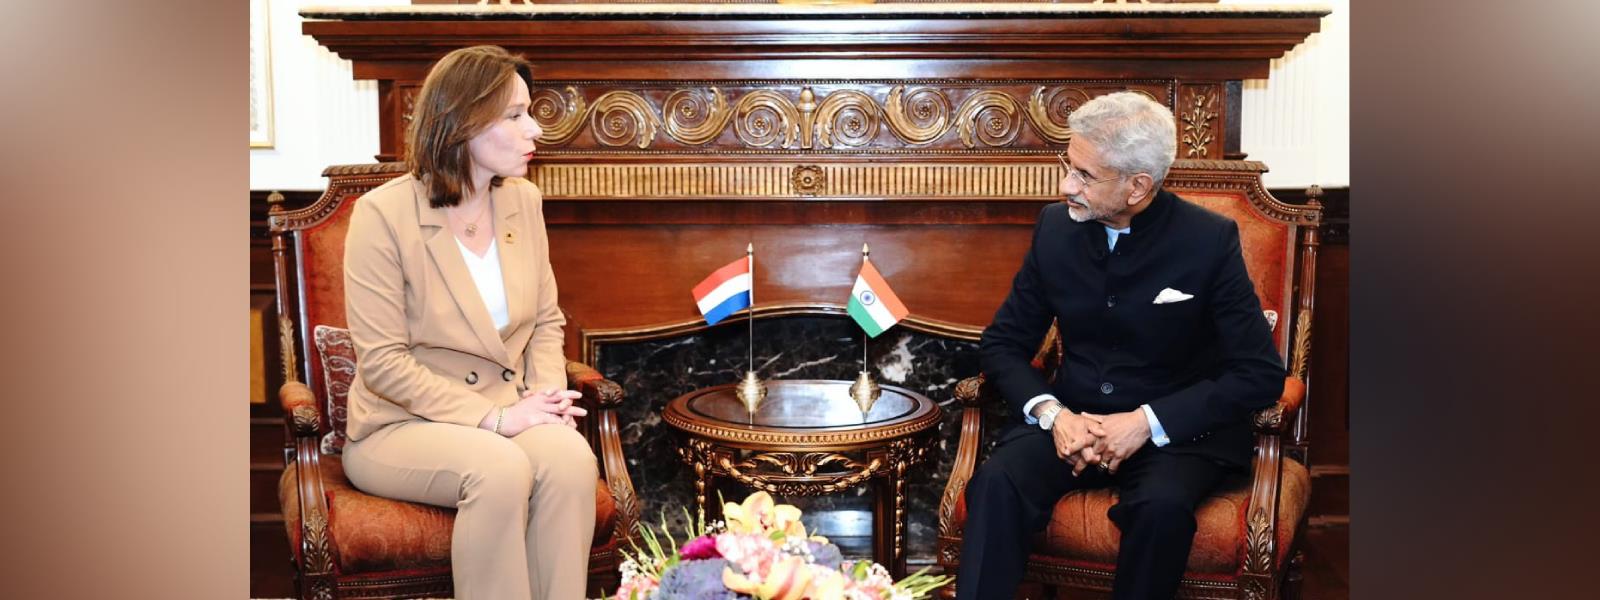 External Affairs Minister Dr. S. Jaishankar met H.E. Ms. Hanke Bruins Slot, Foreign Minister of Netherlands in New Delhi